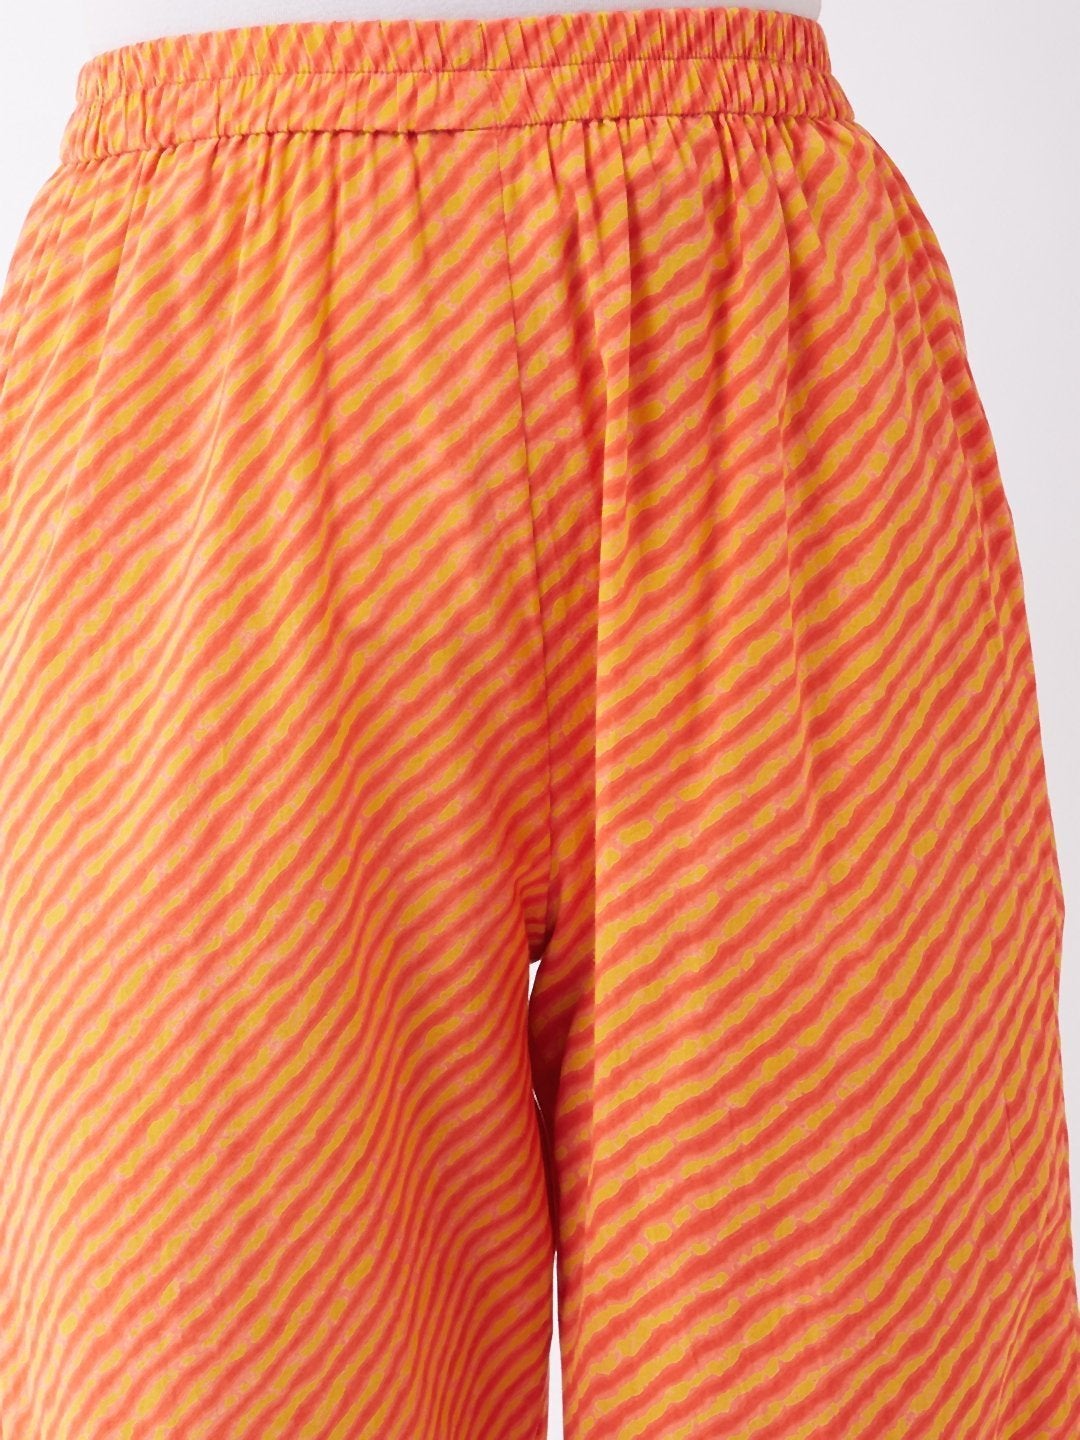 Women's Orange Mustard Lahriya Pant - InWeave